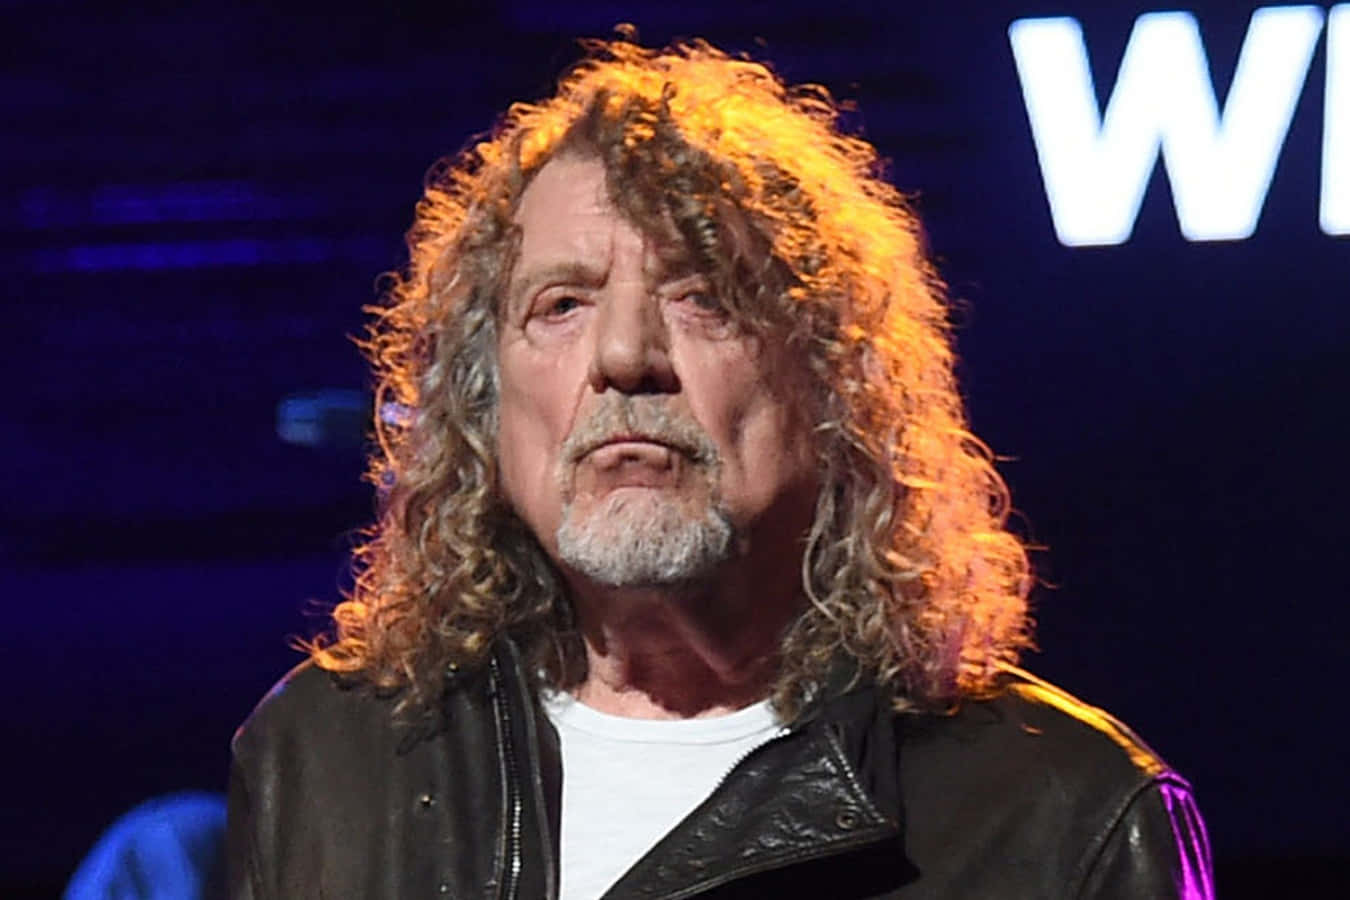 Legendariskerockstjärnan Robert Plant